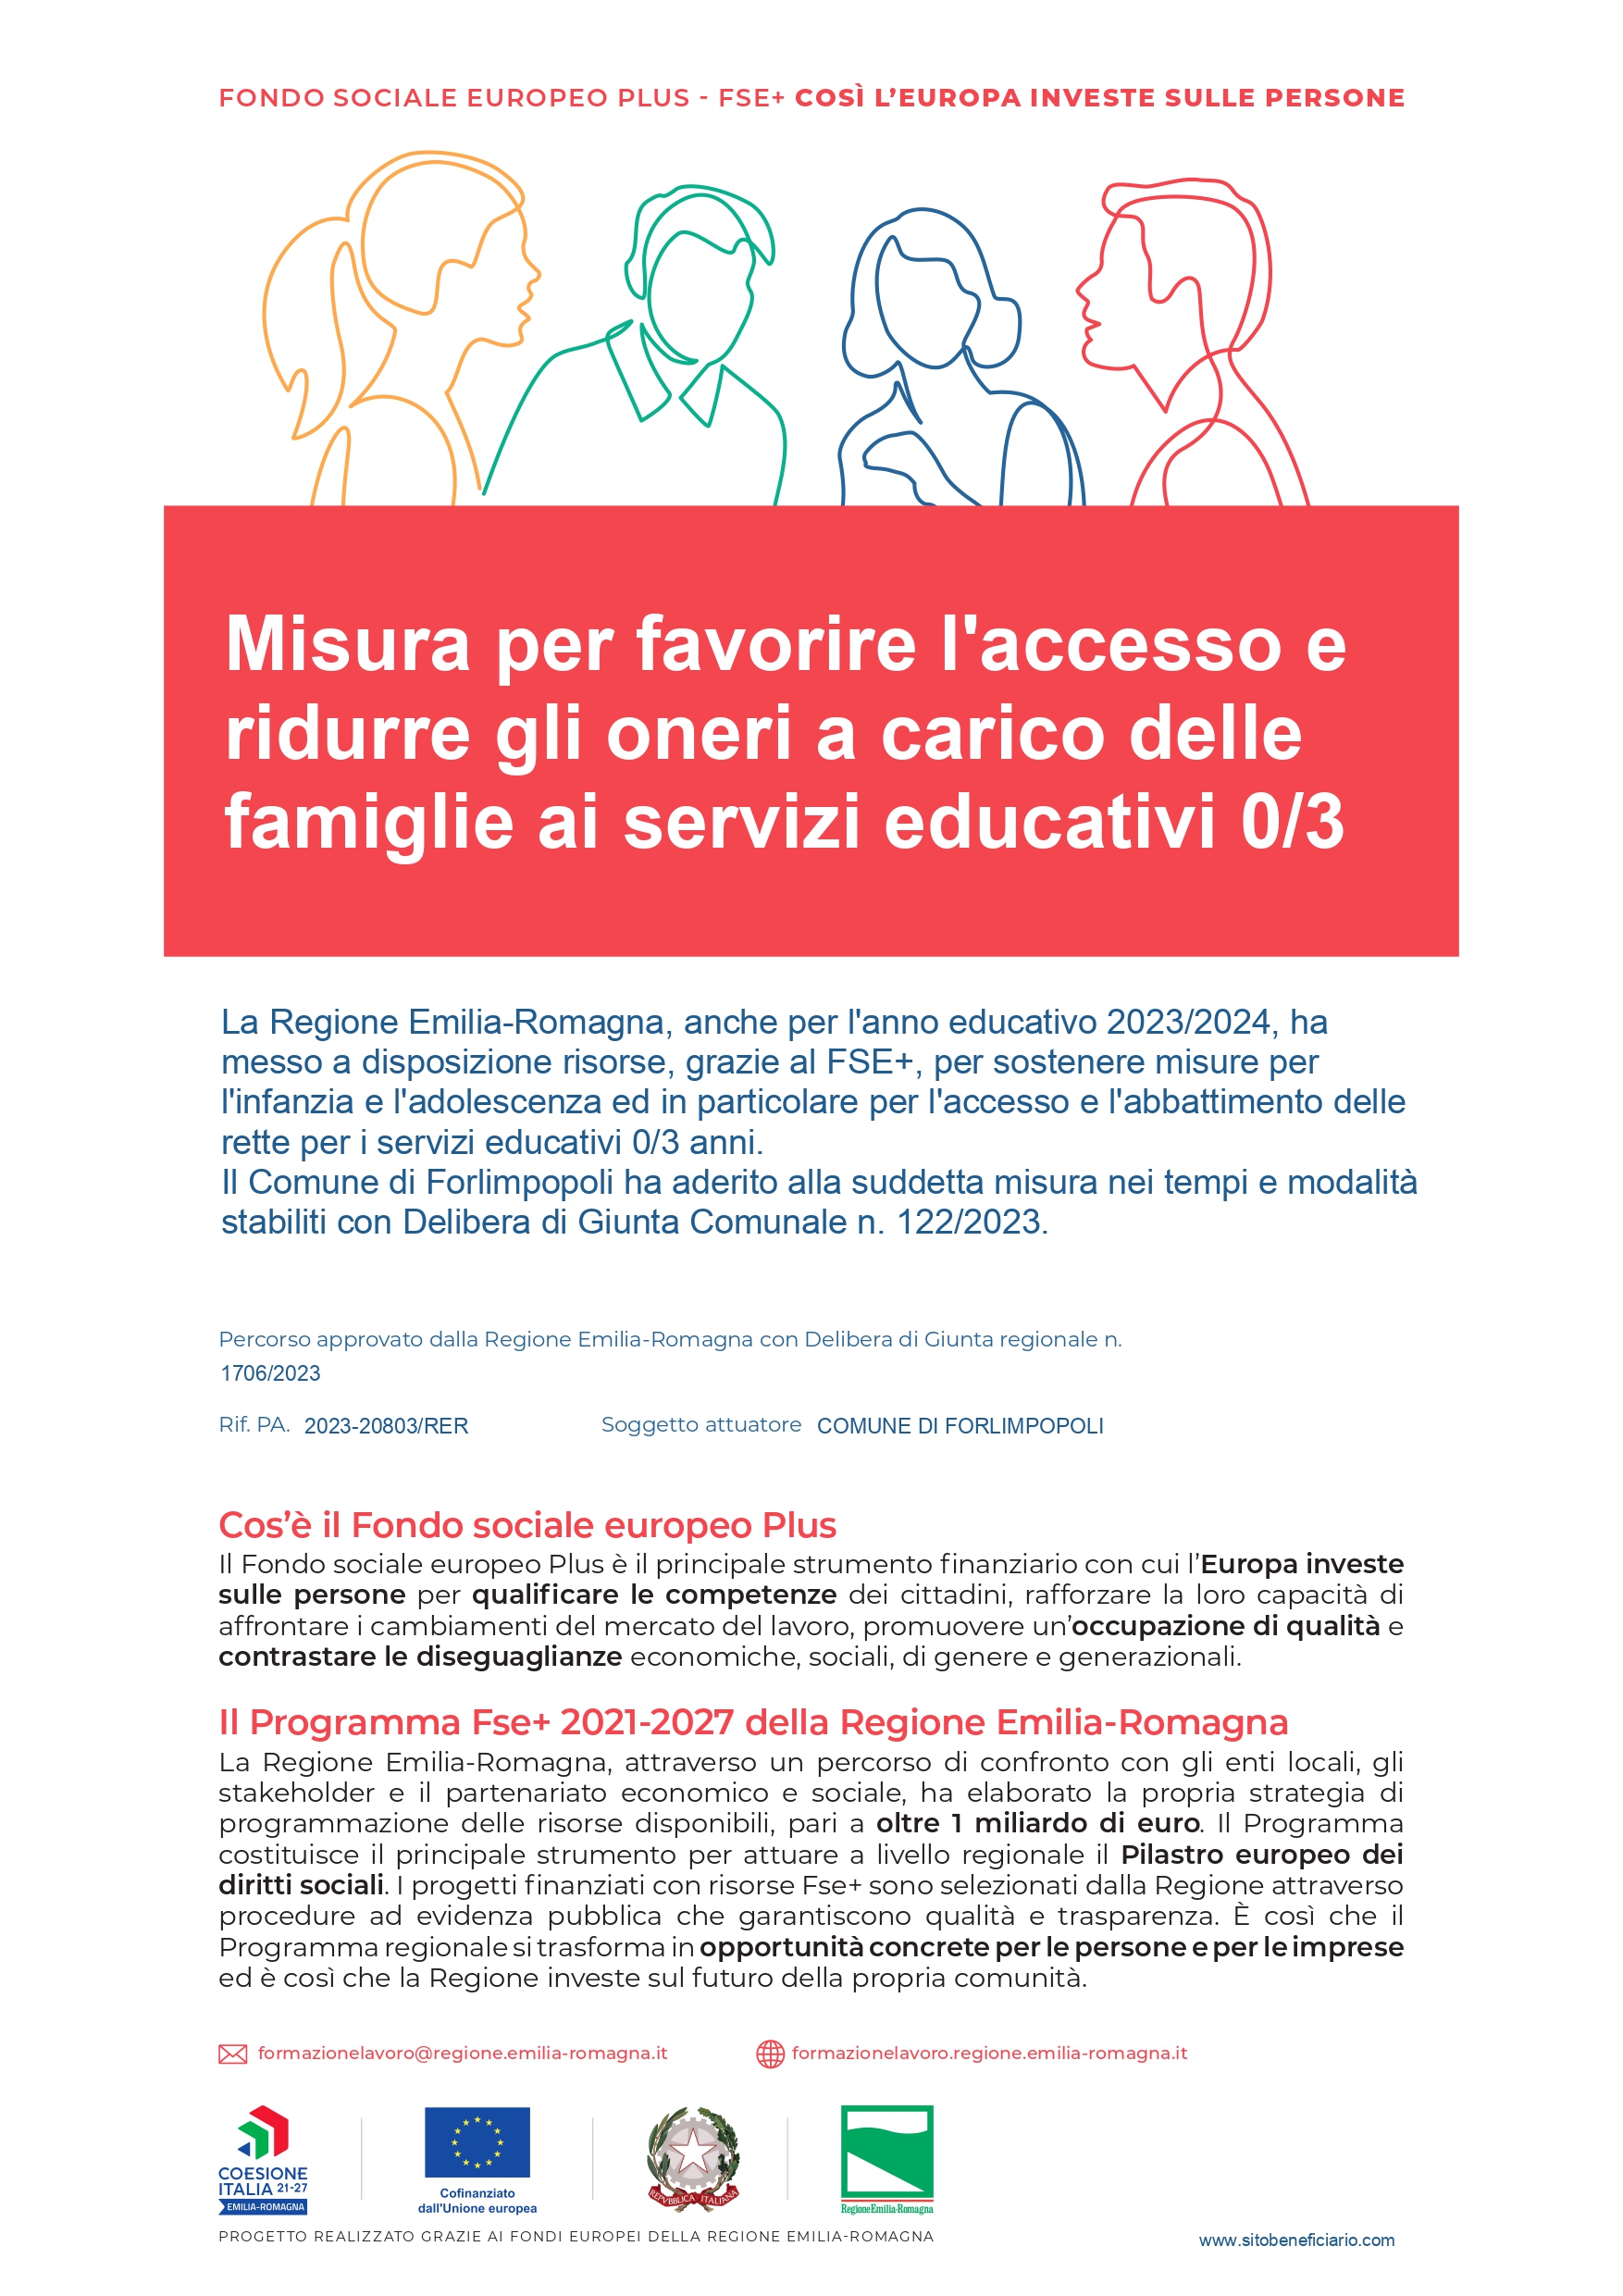 Misura per favorire l'accesso e ridurre gli oneri a carico delle famiglie ai servizi educativi 0/3